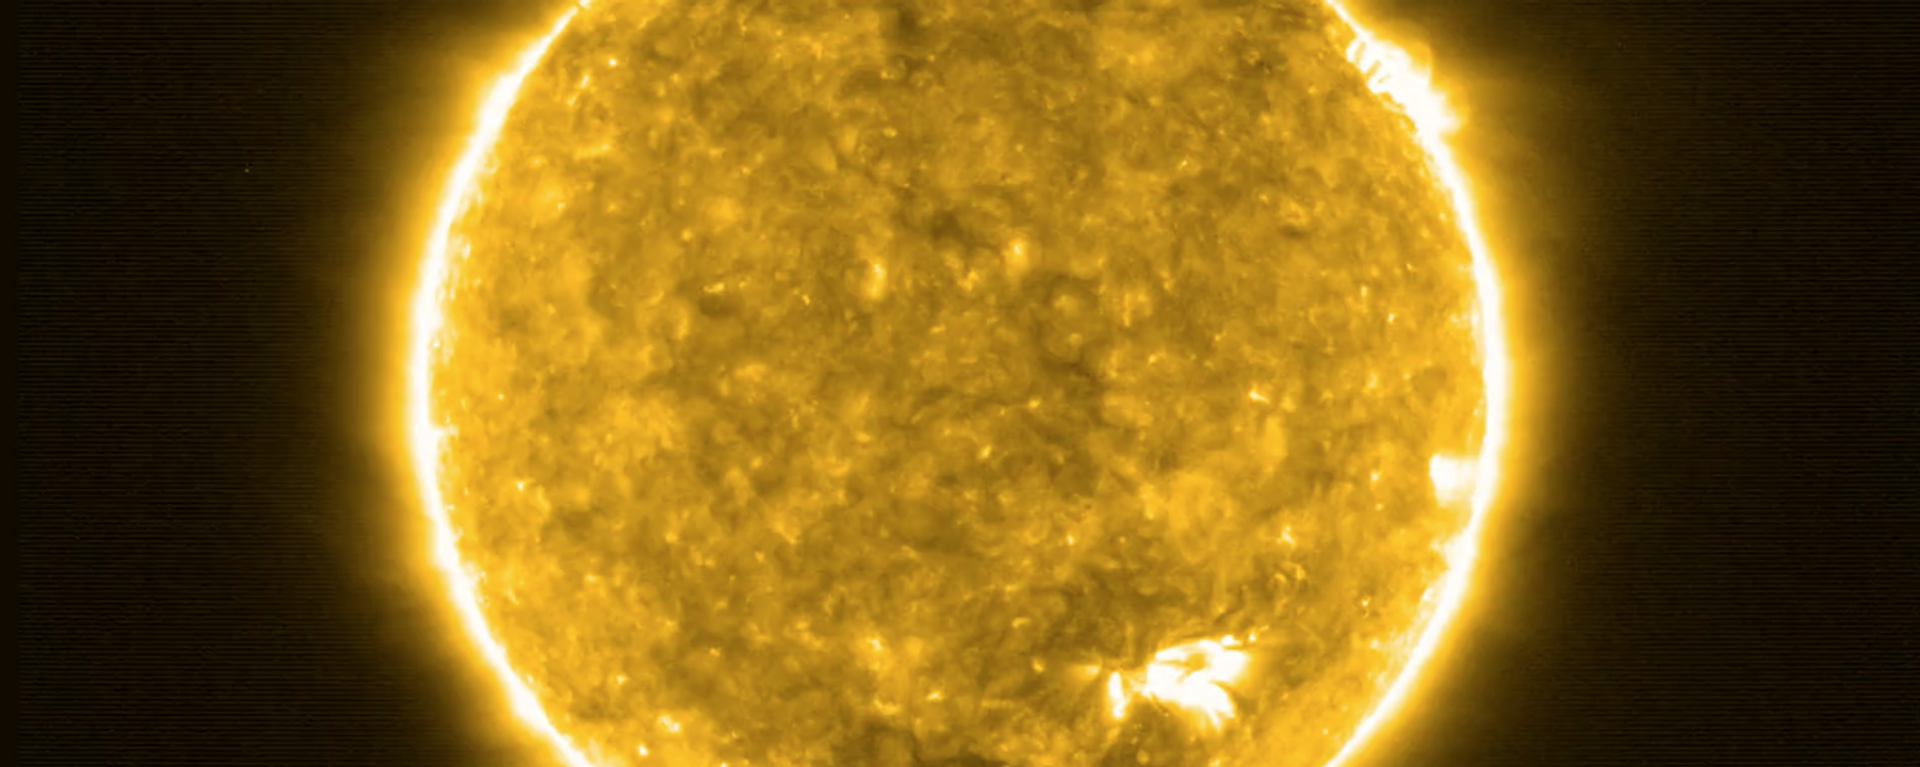 Imagen del Sol tomada por Solar Orbiter - Sputnik Mundo, 1920, 20.02.2021